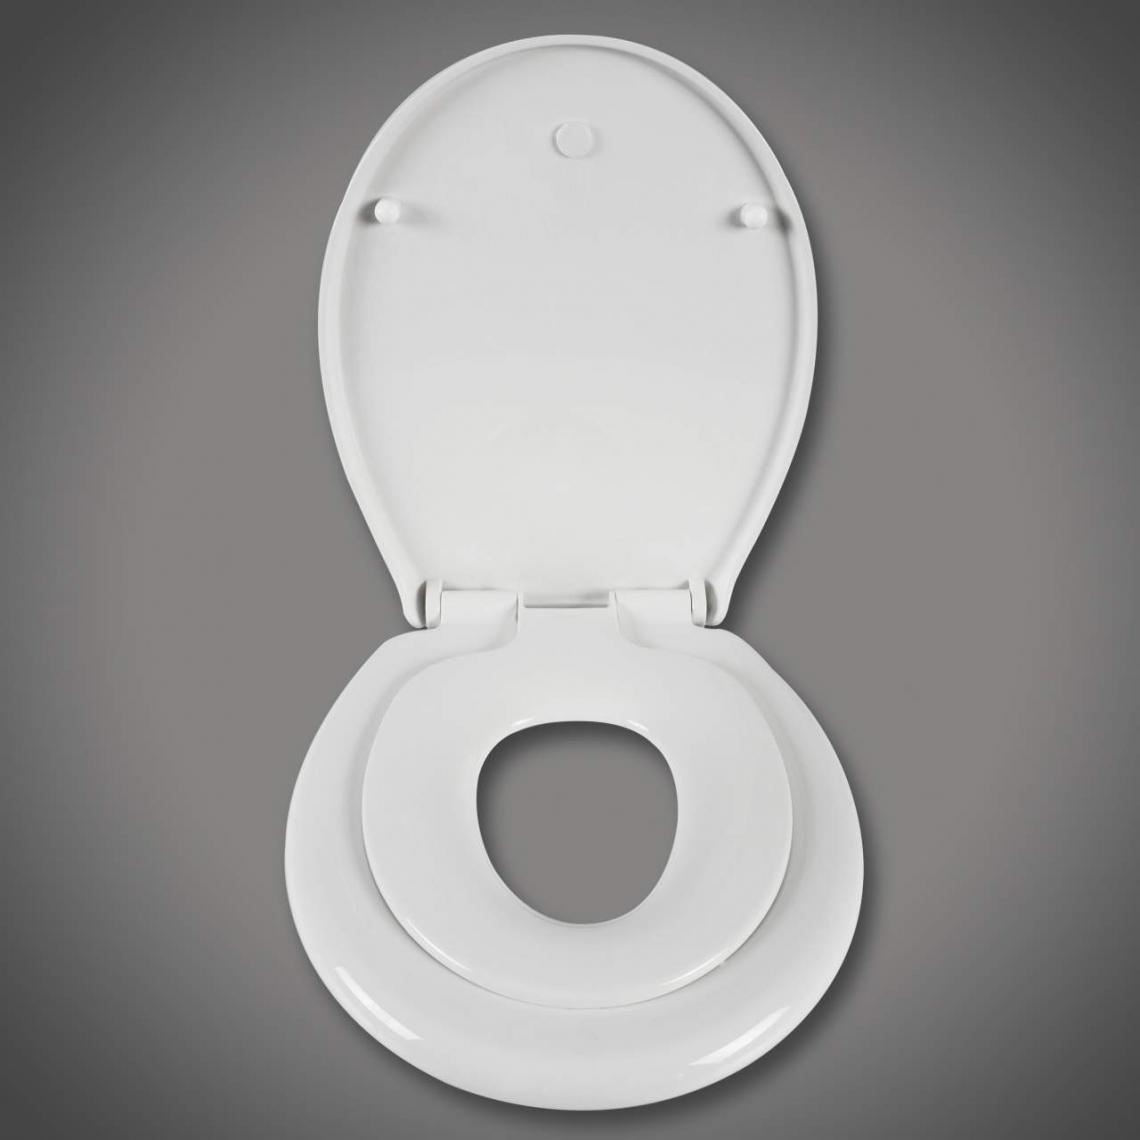 Helloshop26 - Abattant WC siège de toilette pour enfant familial siège de toilette à fermeture douce blanc 19_0000680 - Abattant WC